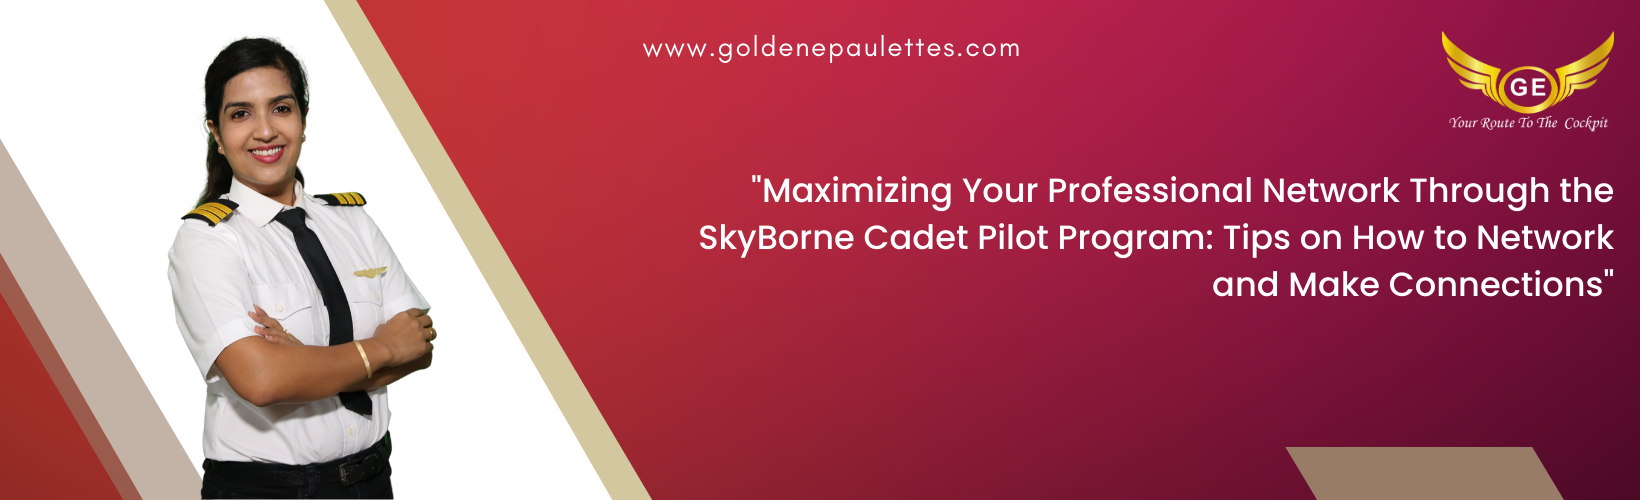 Building Your Professional Network Through the SkyBorne Cadet Pilot Program